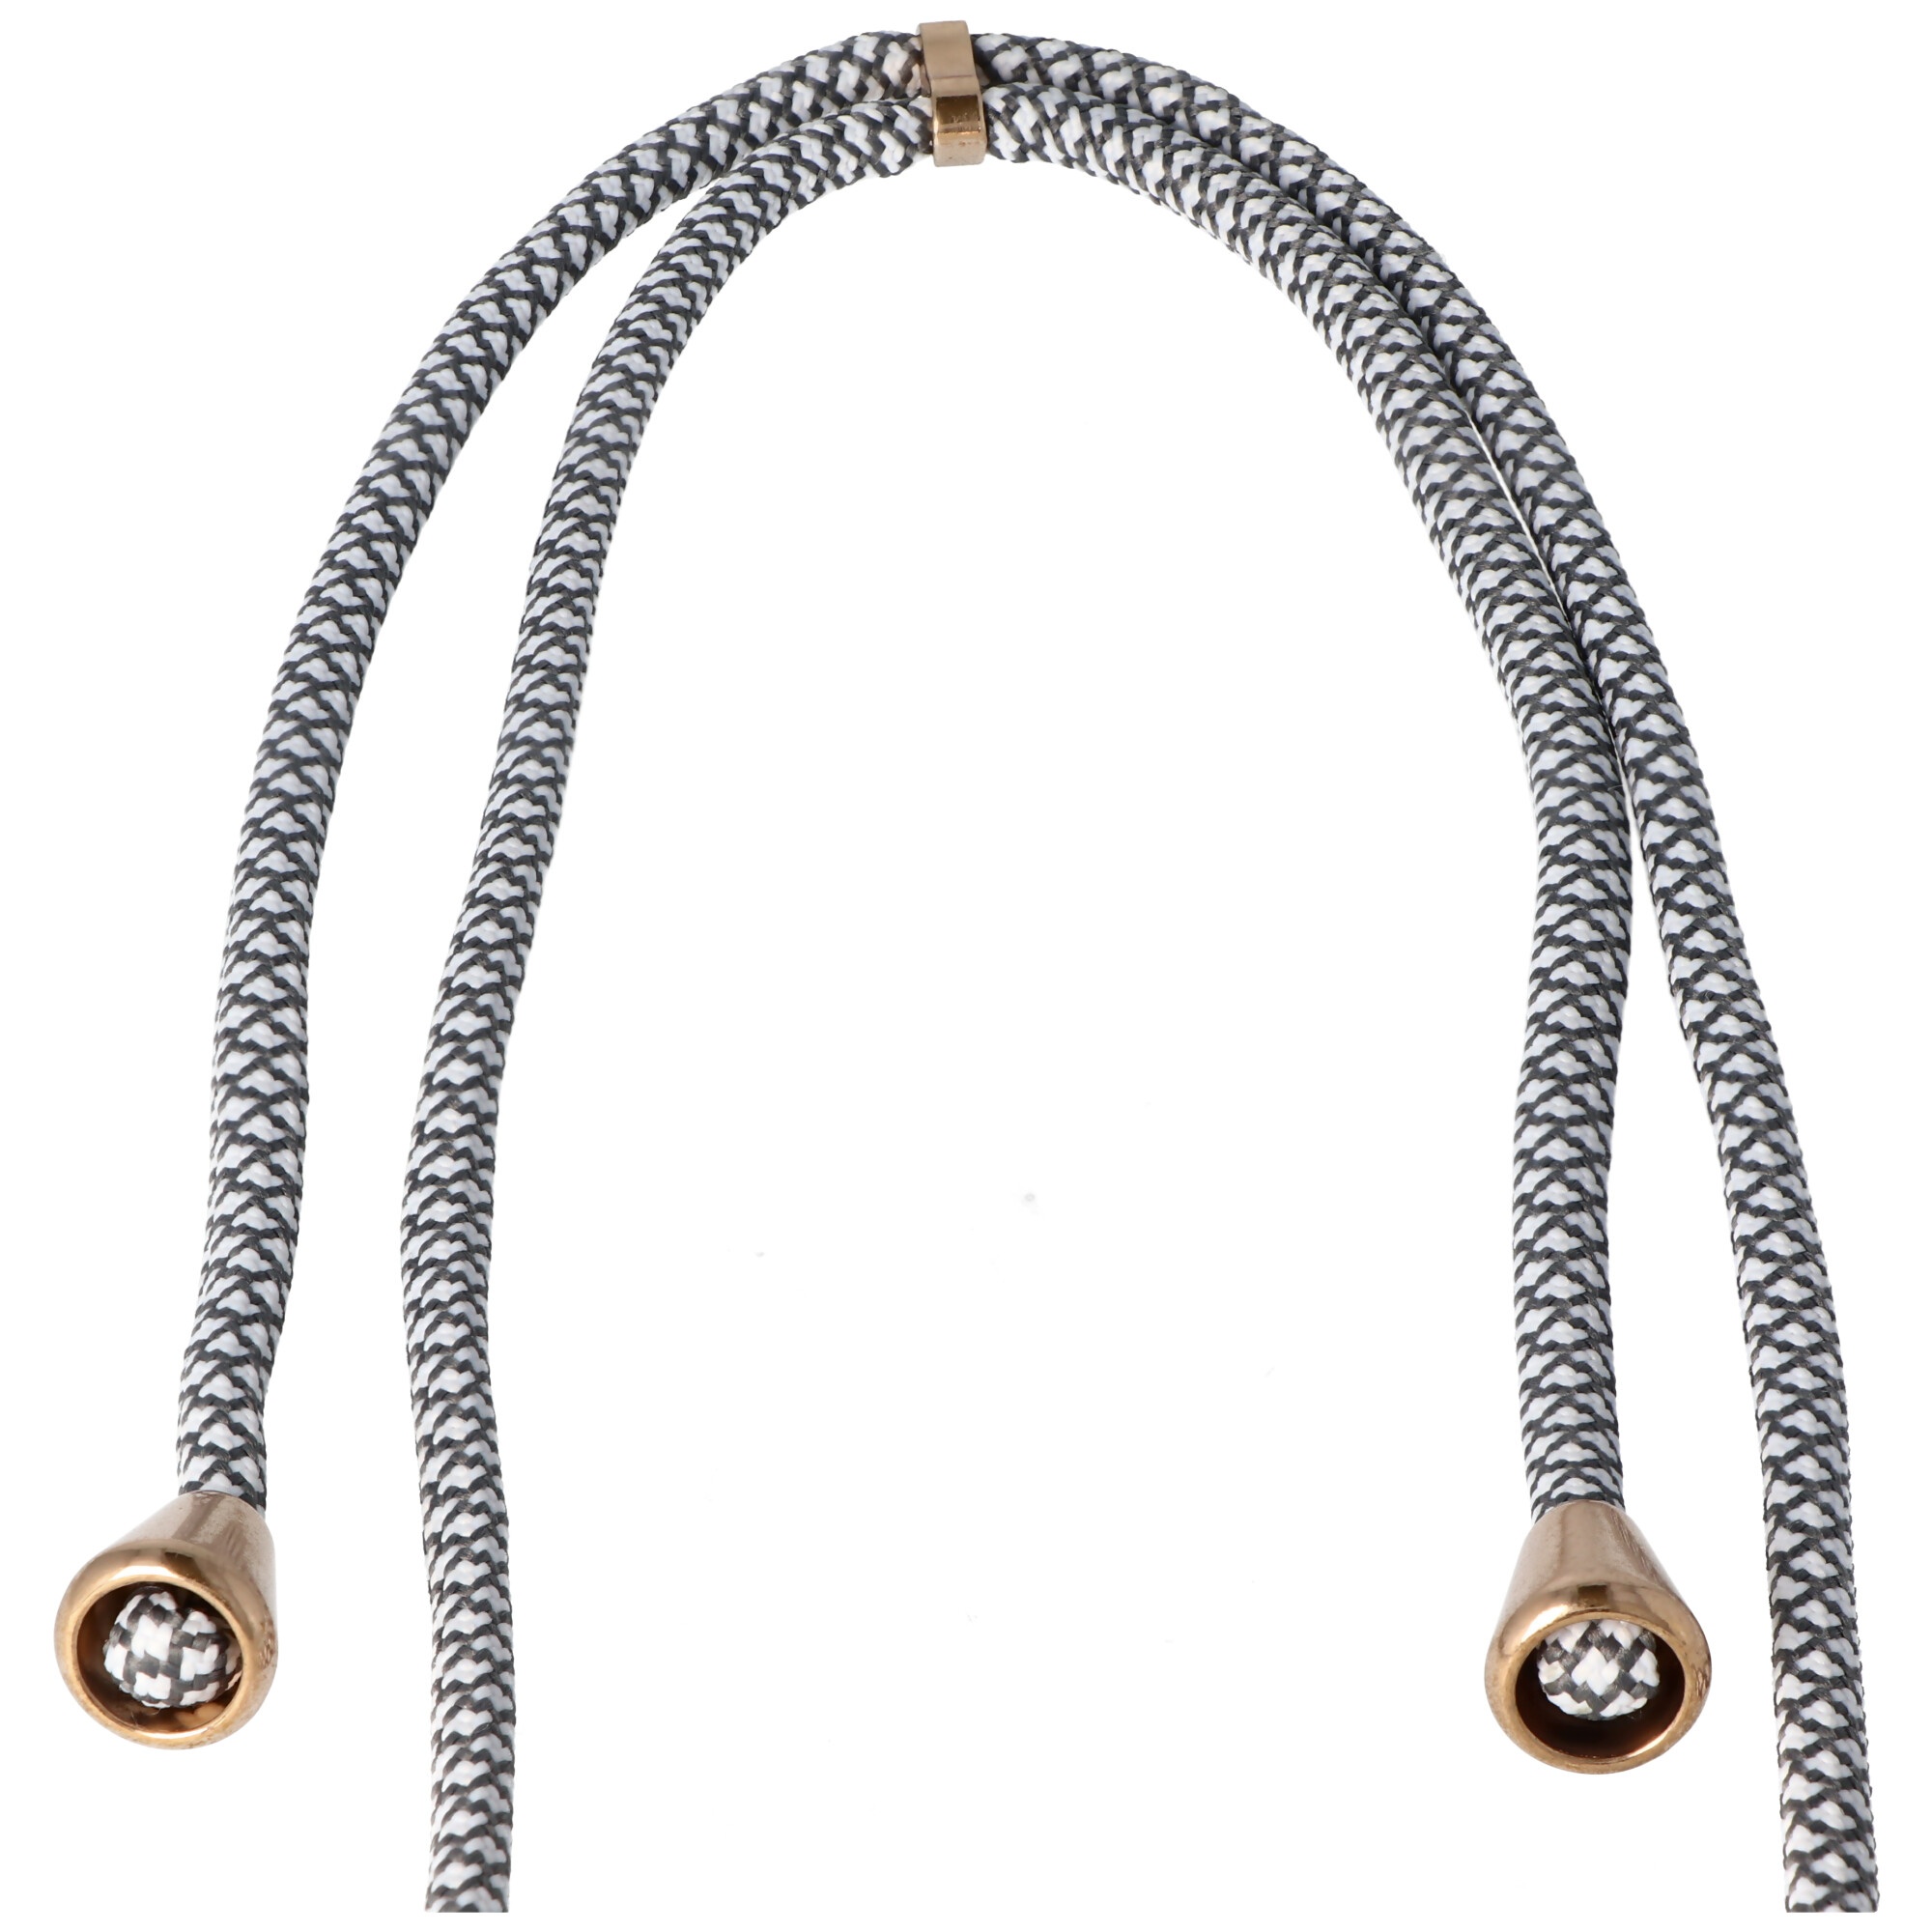 Necklace Case passend für Apple iPhone 11 PRO, Smartphonehülle mit Kordel grau,weiß zum Umhängen